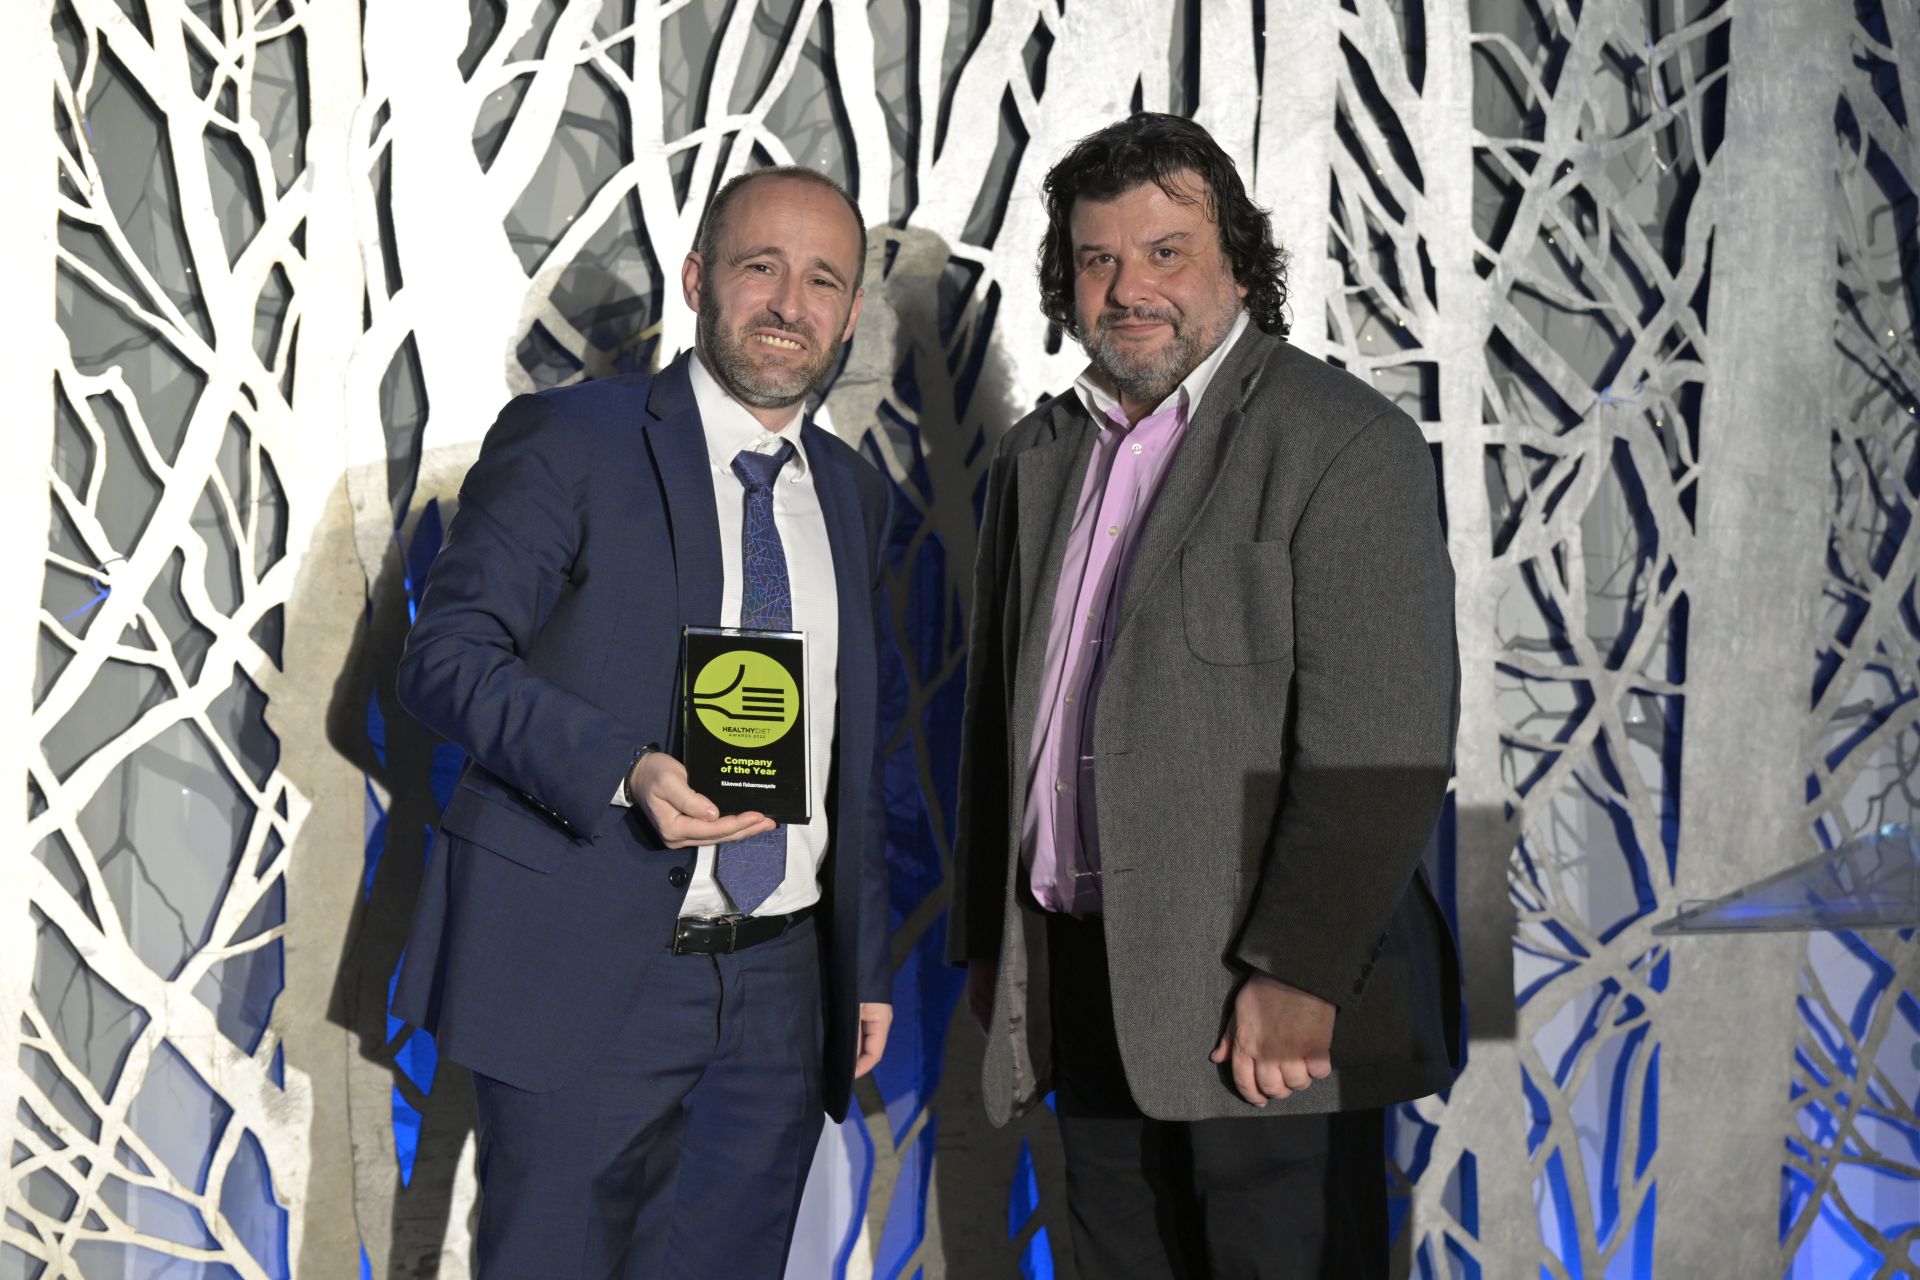 GRAND AWARD - Company of the year: Ελληνικά Γαλακτοκομεία. Χρήστος Καμπαγιάννης, Υπεύθυνος Δικτύου Πωλήσεων, Γεώργιος Μπόσκου, Πρόεδρος Κριτικής Επιτροπής Healthy Diet Awards